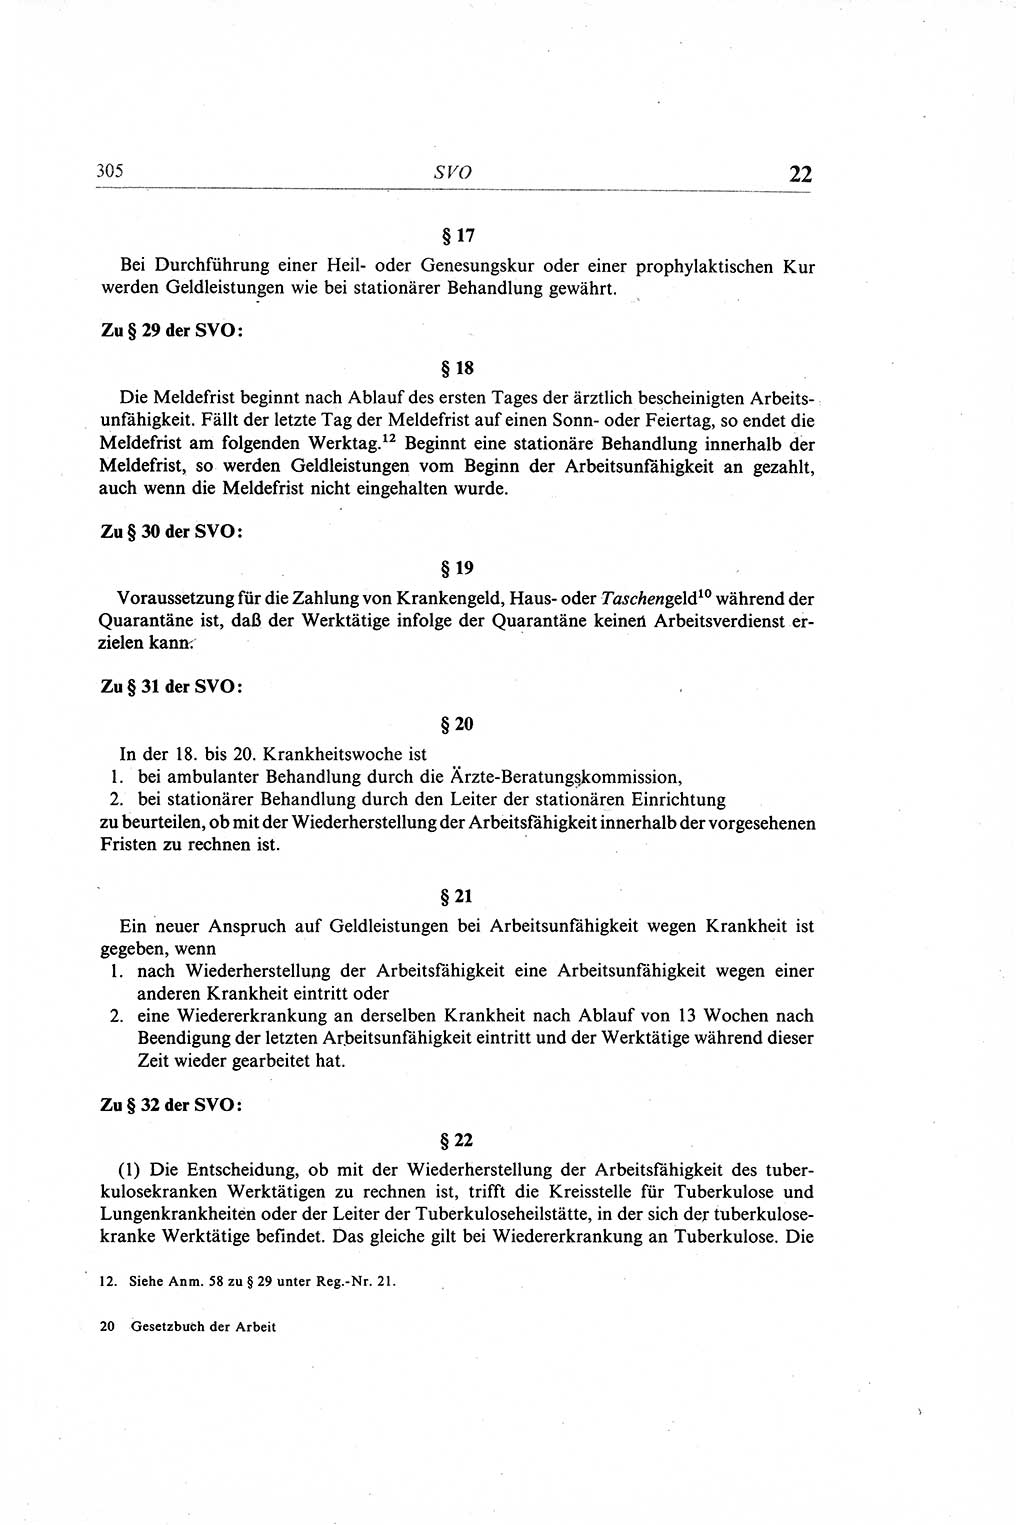 Gesetzbuch der Arbeit (GBA) und andere ausgewählte rechtliche Bestimmungen [Deutsche Demokratische Republik (DDR)] 1968, Seite 305 (GBA DDR 1968, S. 305)